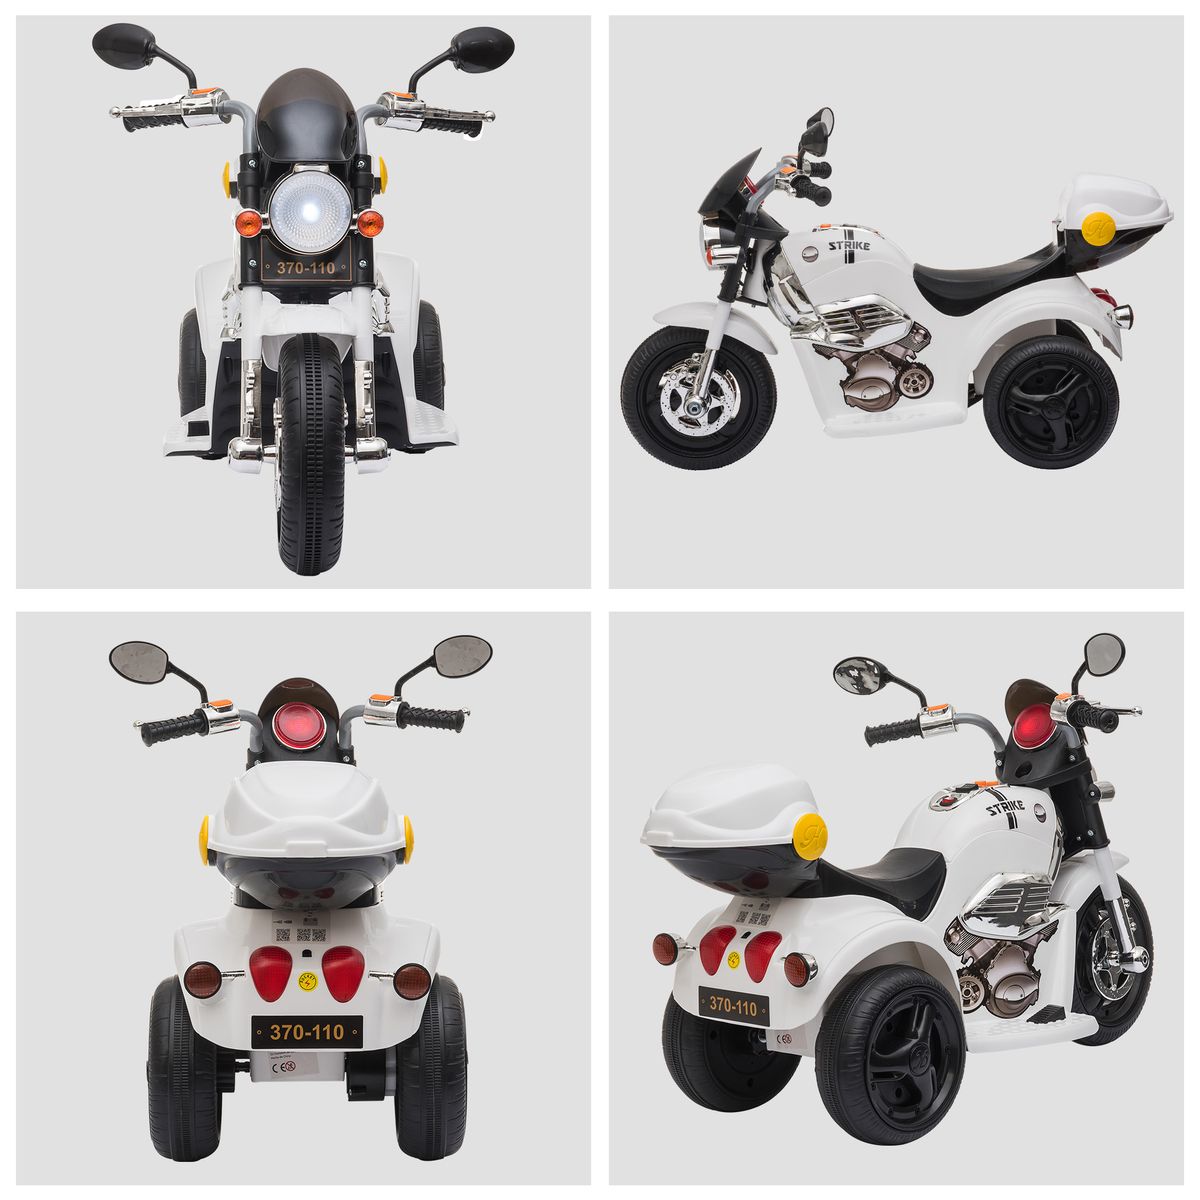 Moto électrique pour enfants scooter 3 roues 6 V 3 Km/h effets lumineux et  sonores top case